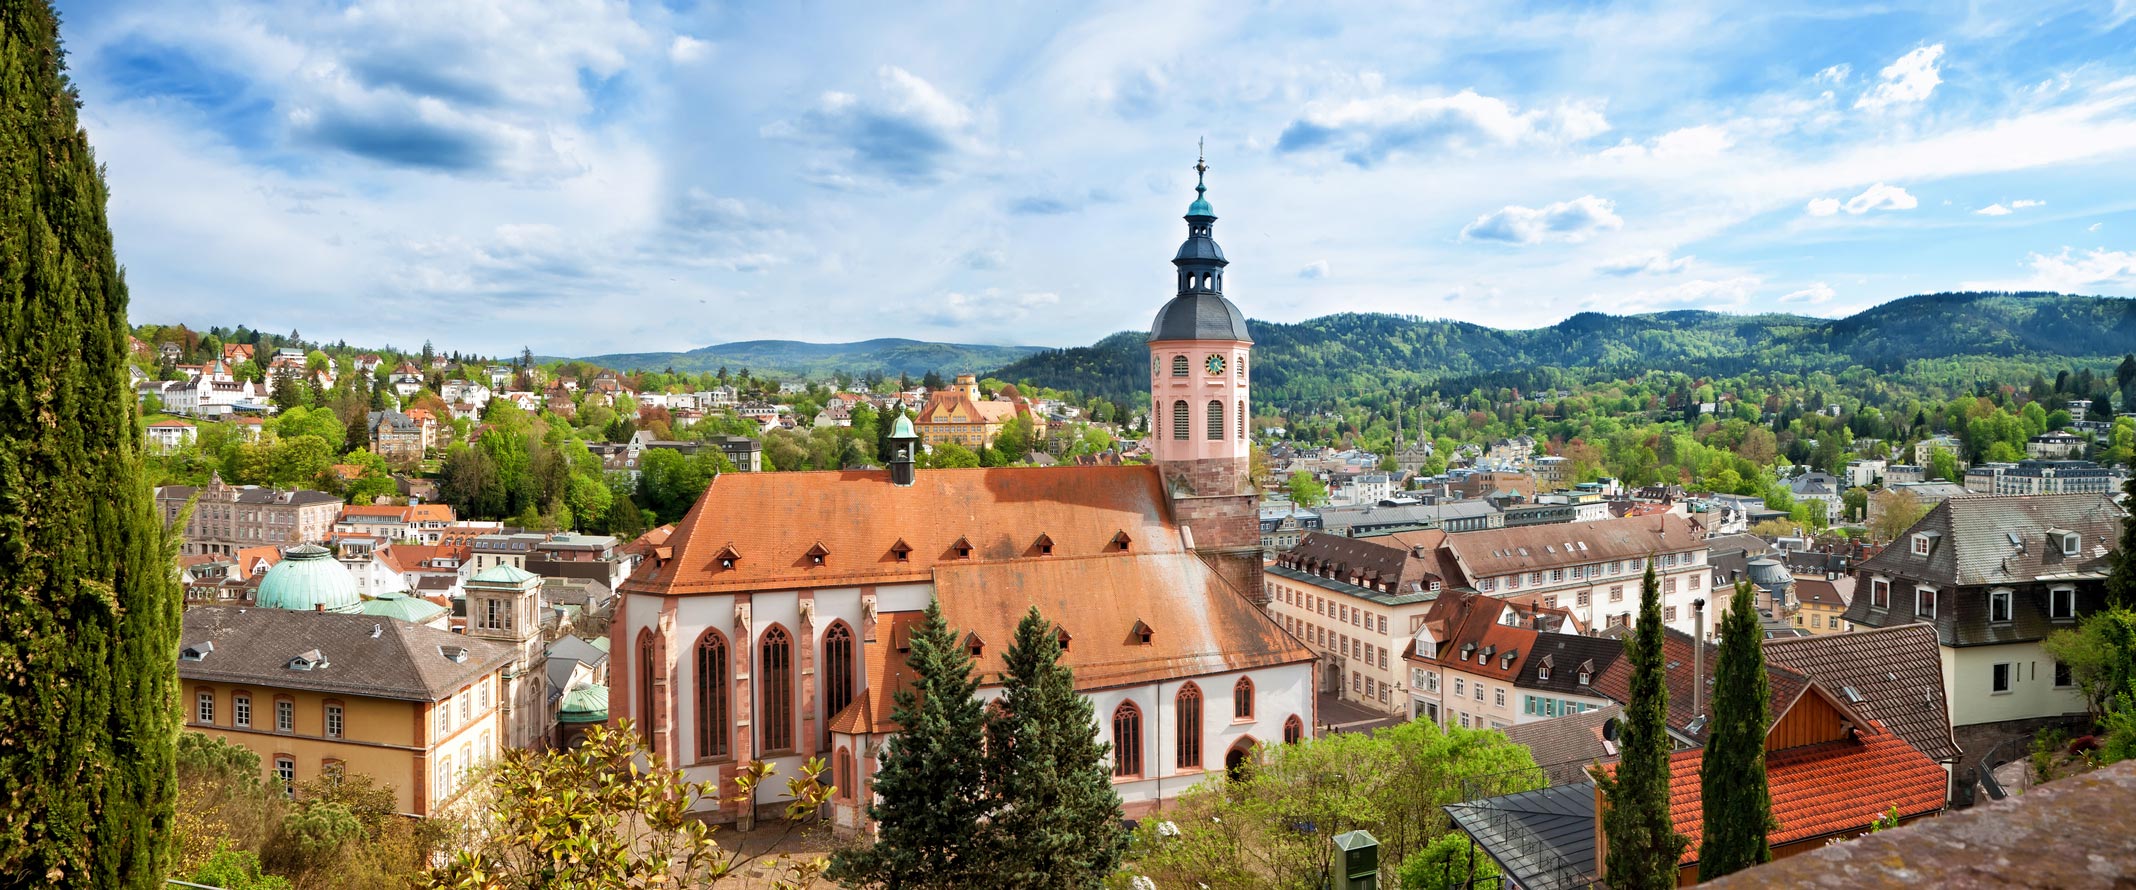 Baden-Baden - Stiftskirche mit Merkur im Hintergrund